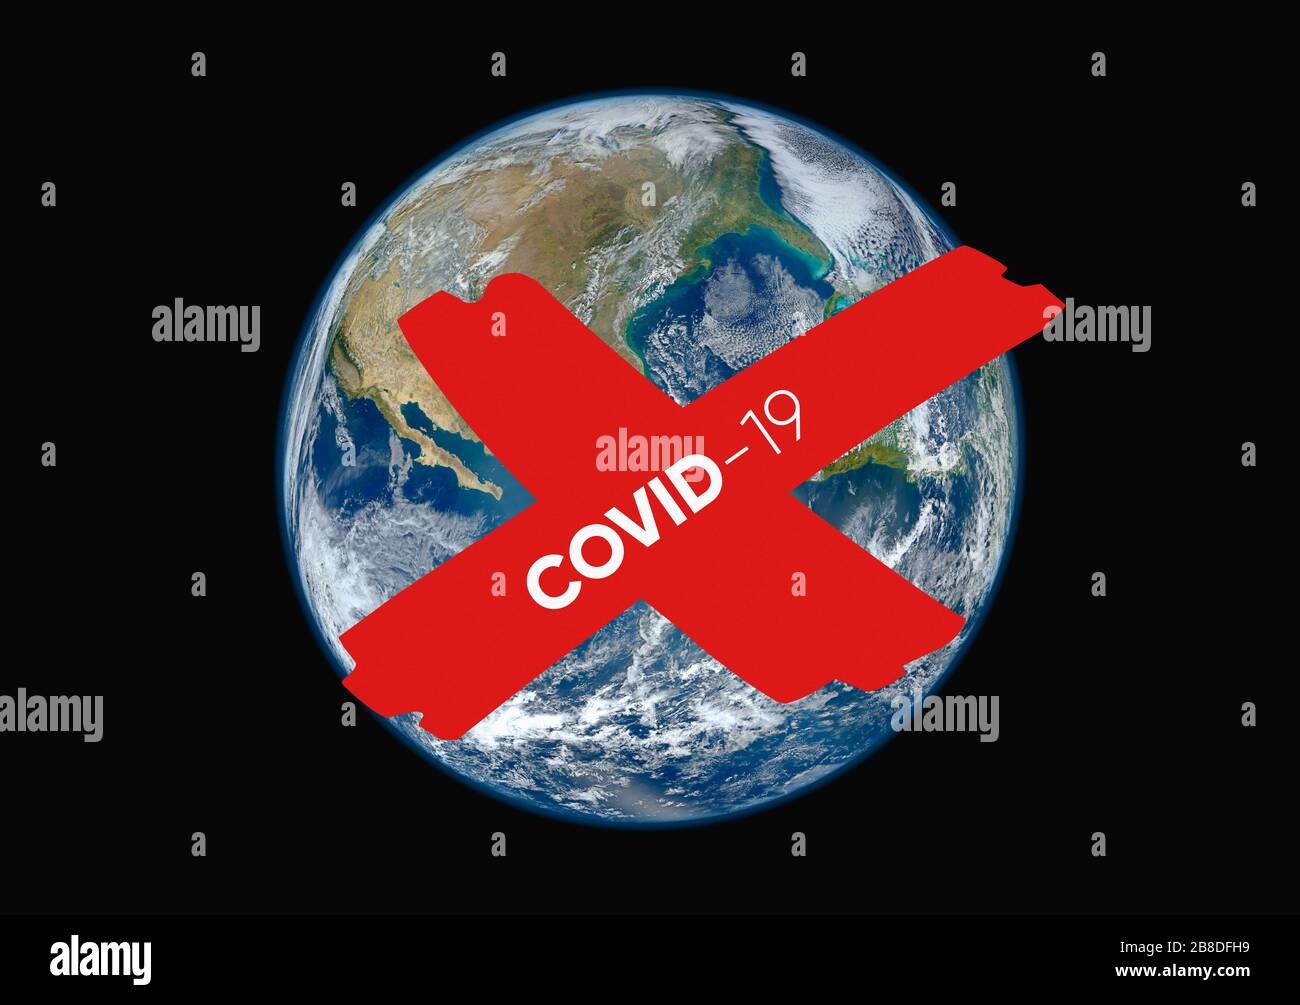 Coronavirus Covid 19 Globale Ausbruch- und Pandemie-Illustration mit dem Planeten Erde, wie sie von Kosmos und rot annullierten Zeichen gesehen wird Stockfoto